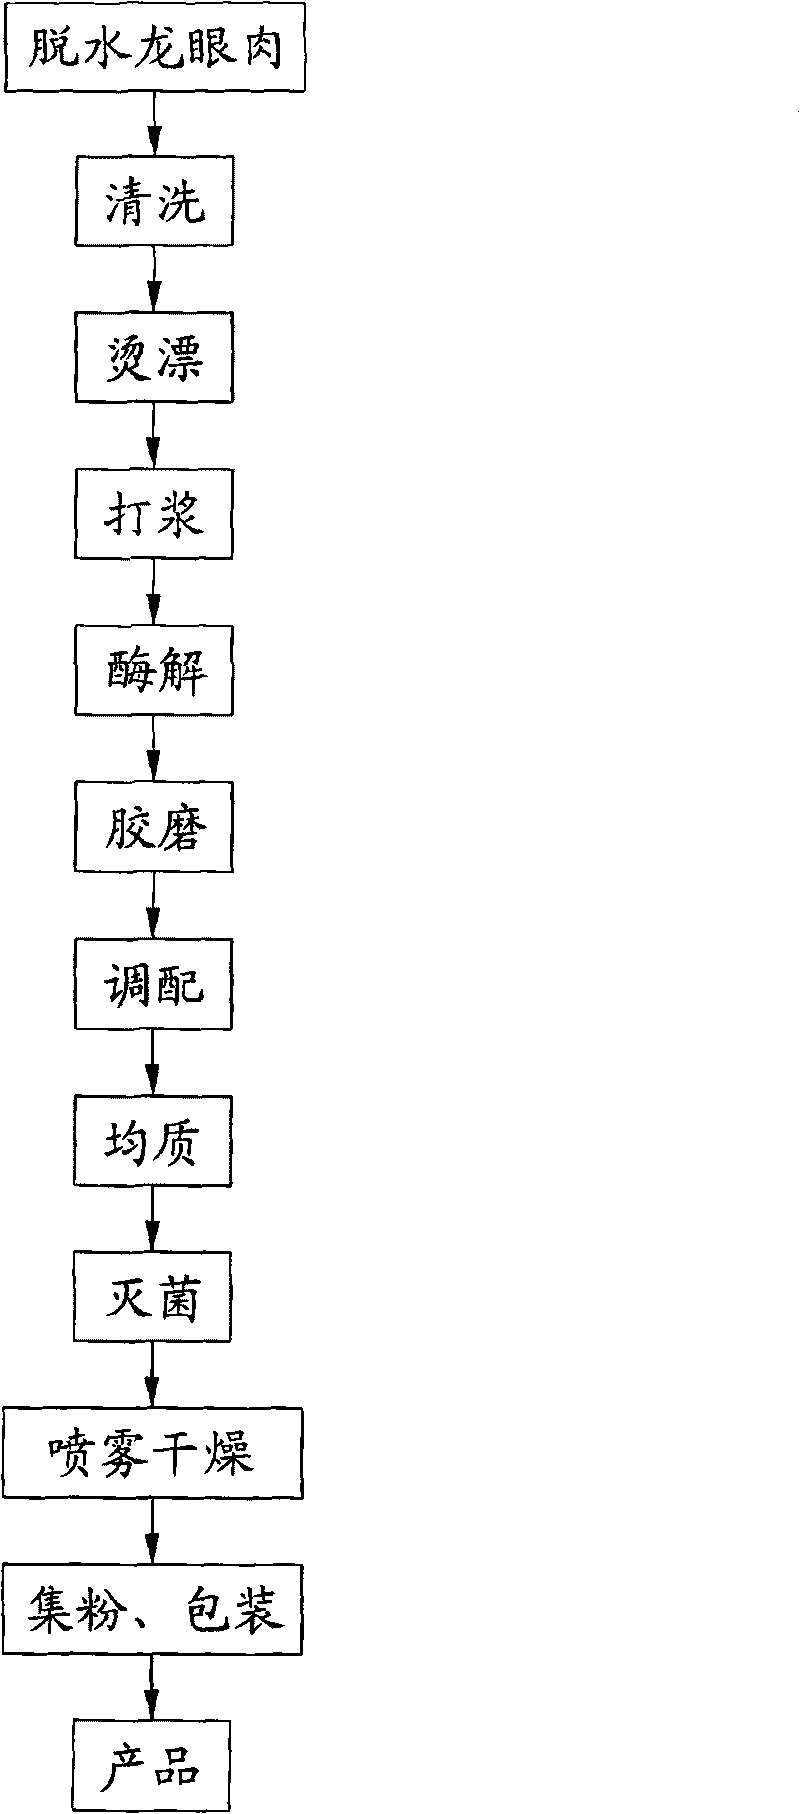 Method for making natural longan powder